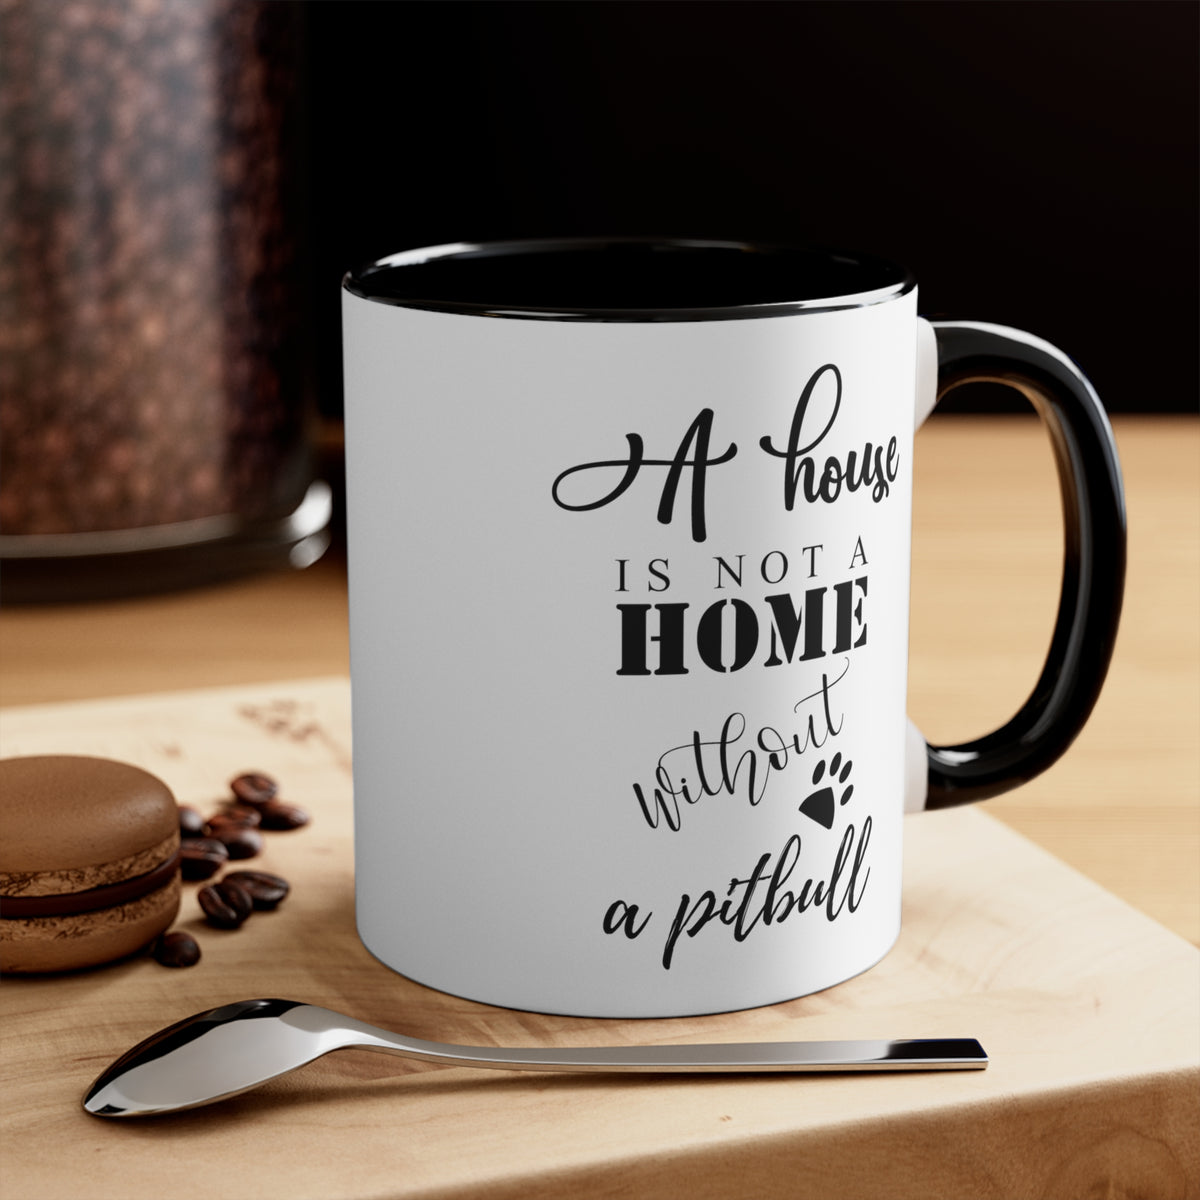 A House Is Not A Home Coffee Mug, 11oz